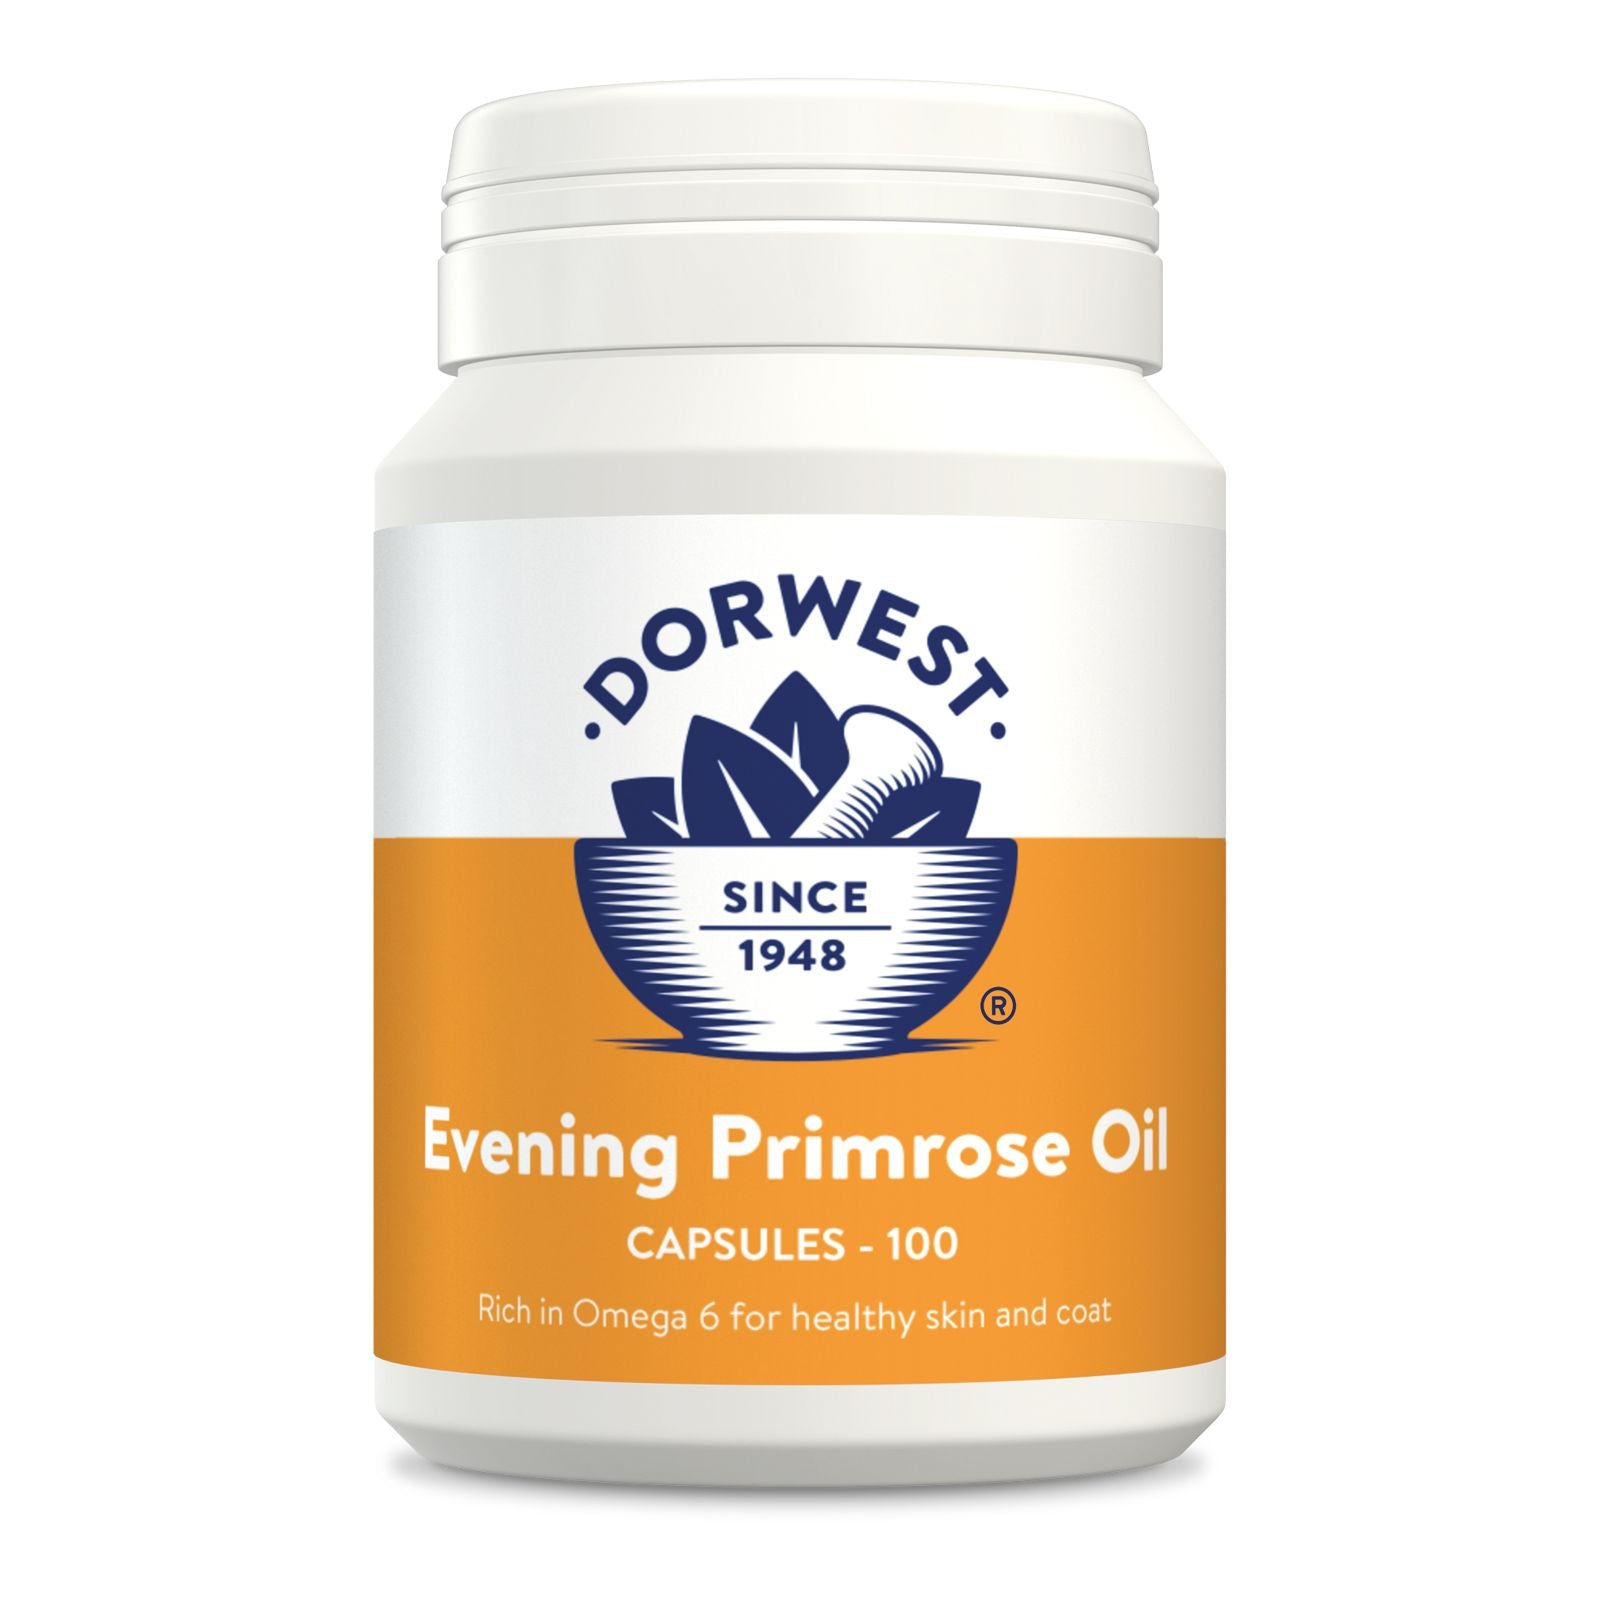 Dorwest Evening Primrose Oil Capsules For Pets